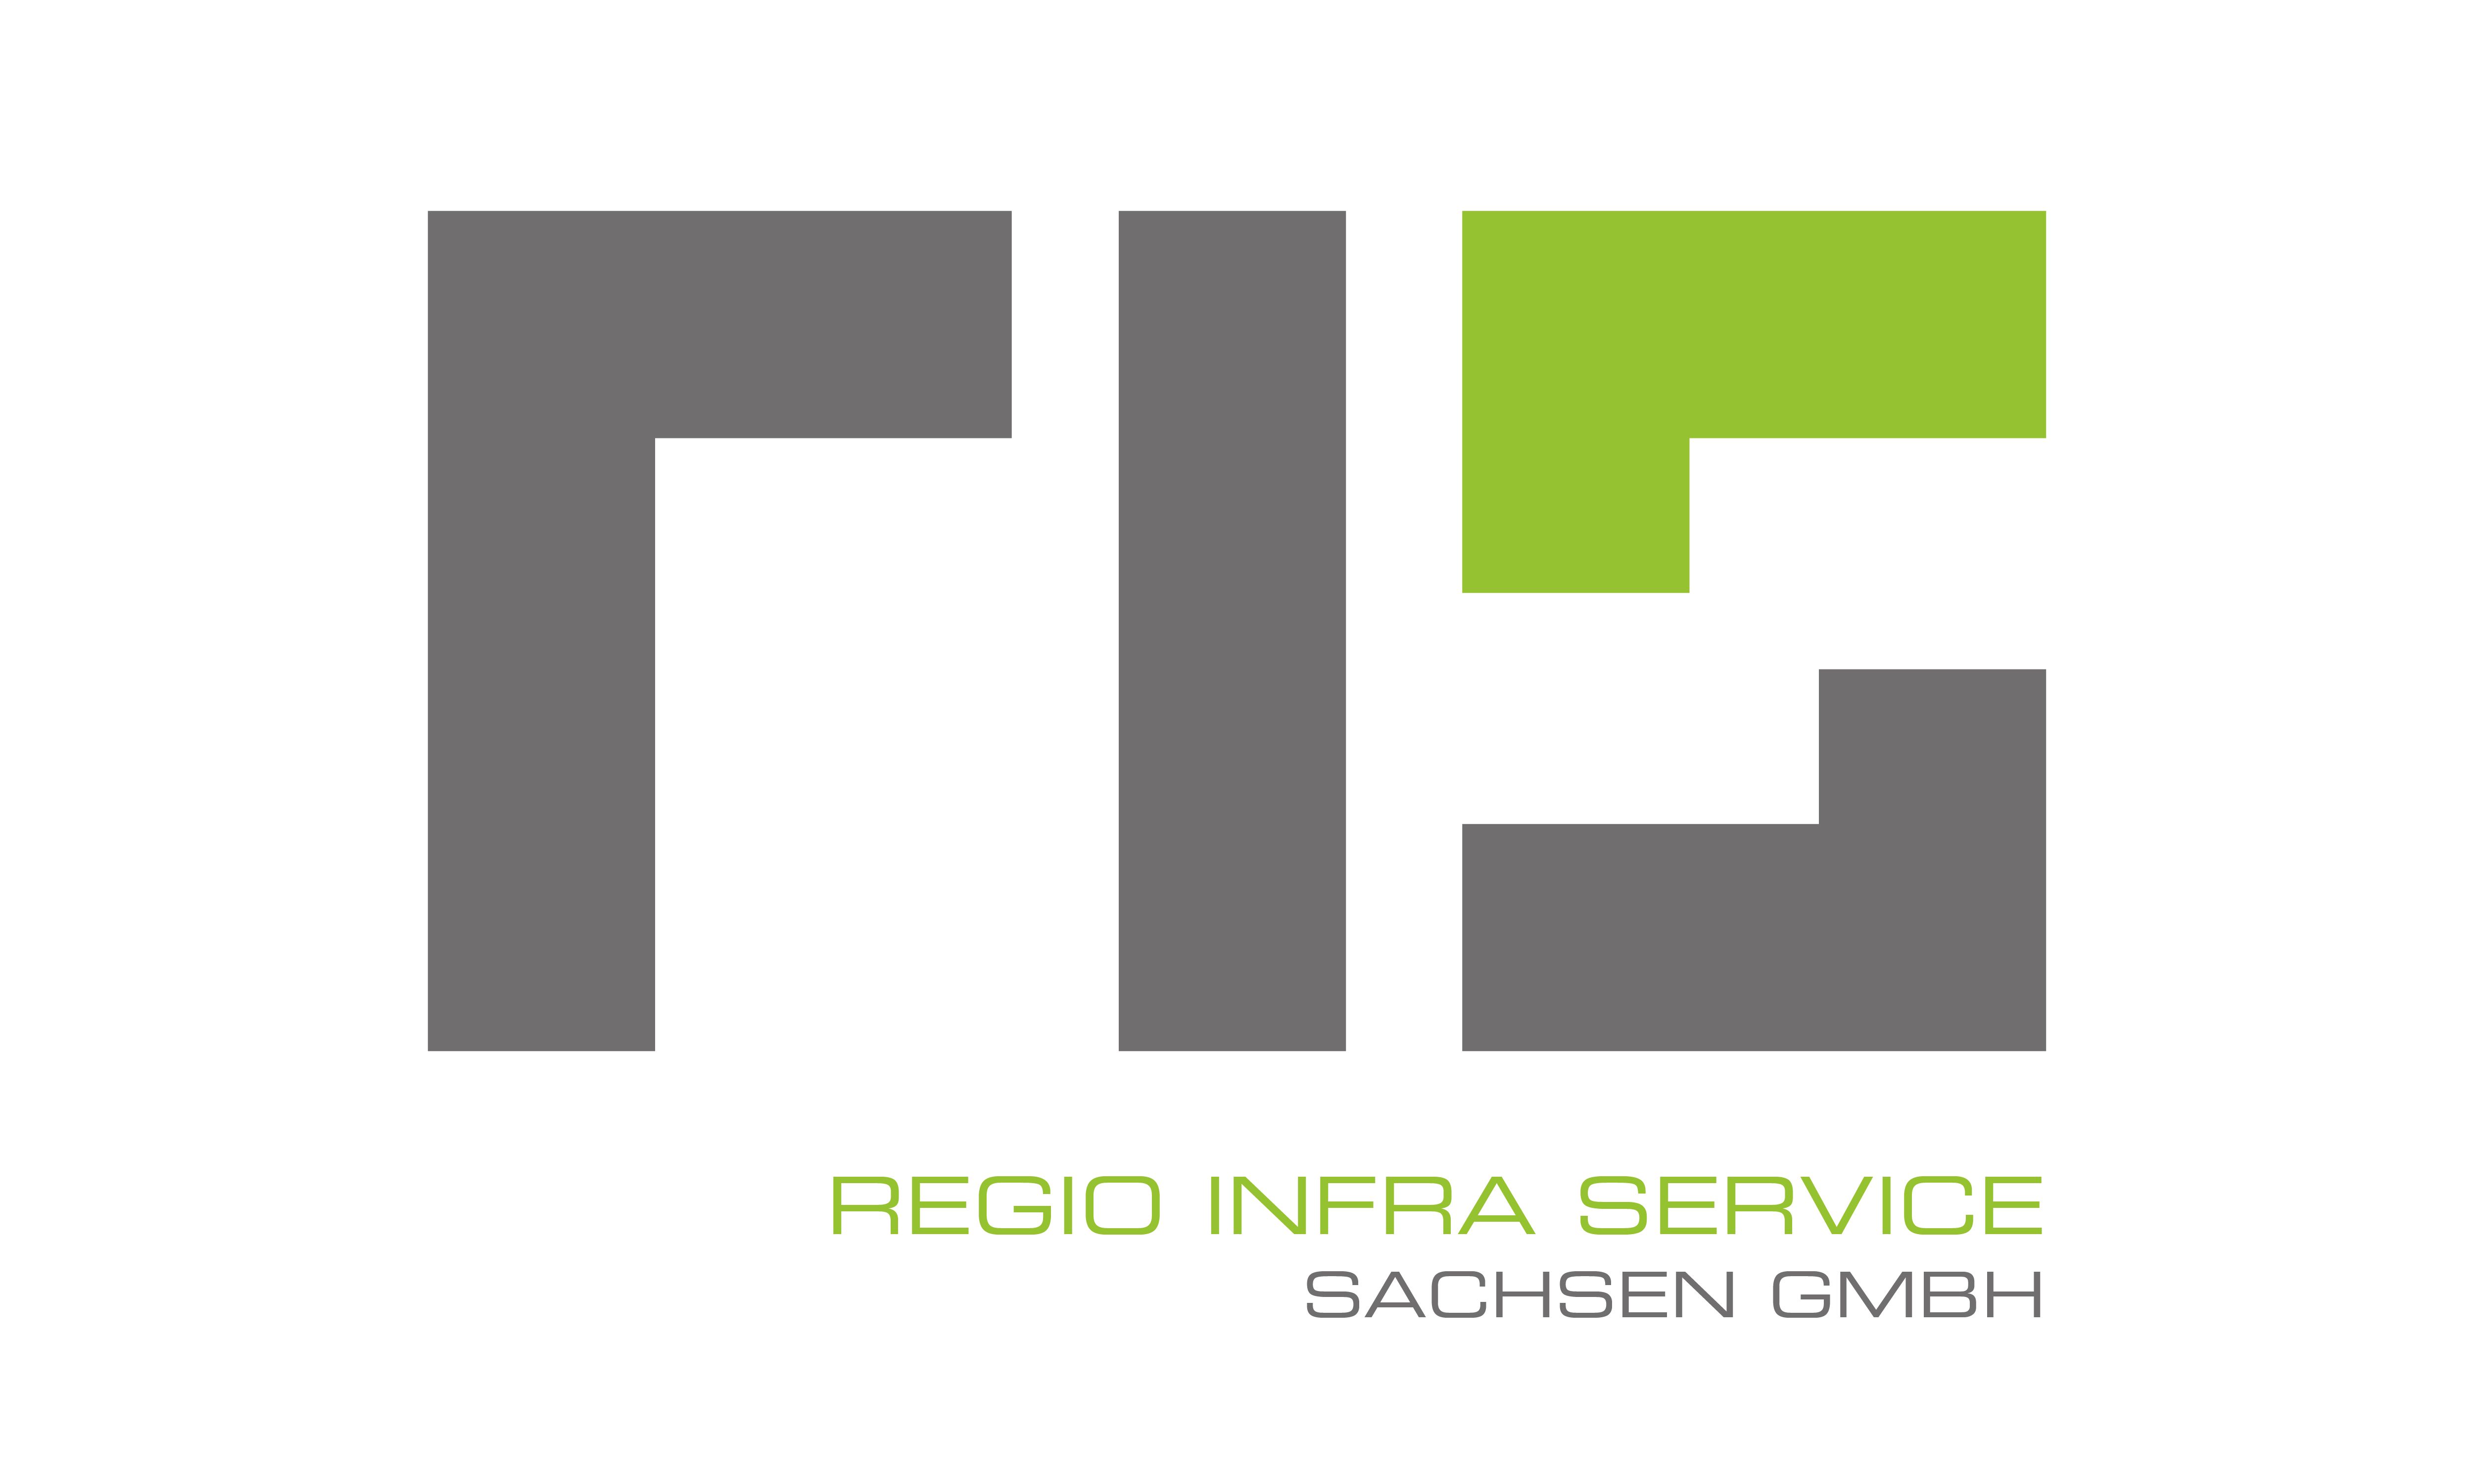 Logo RIS